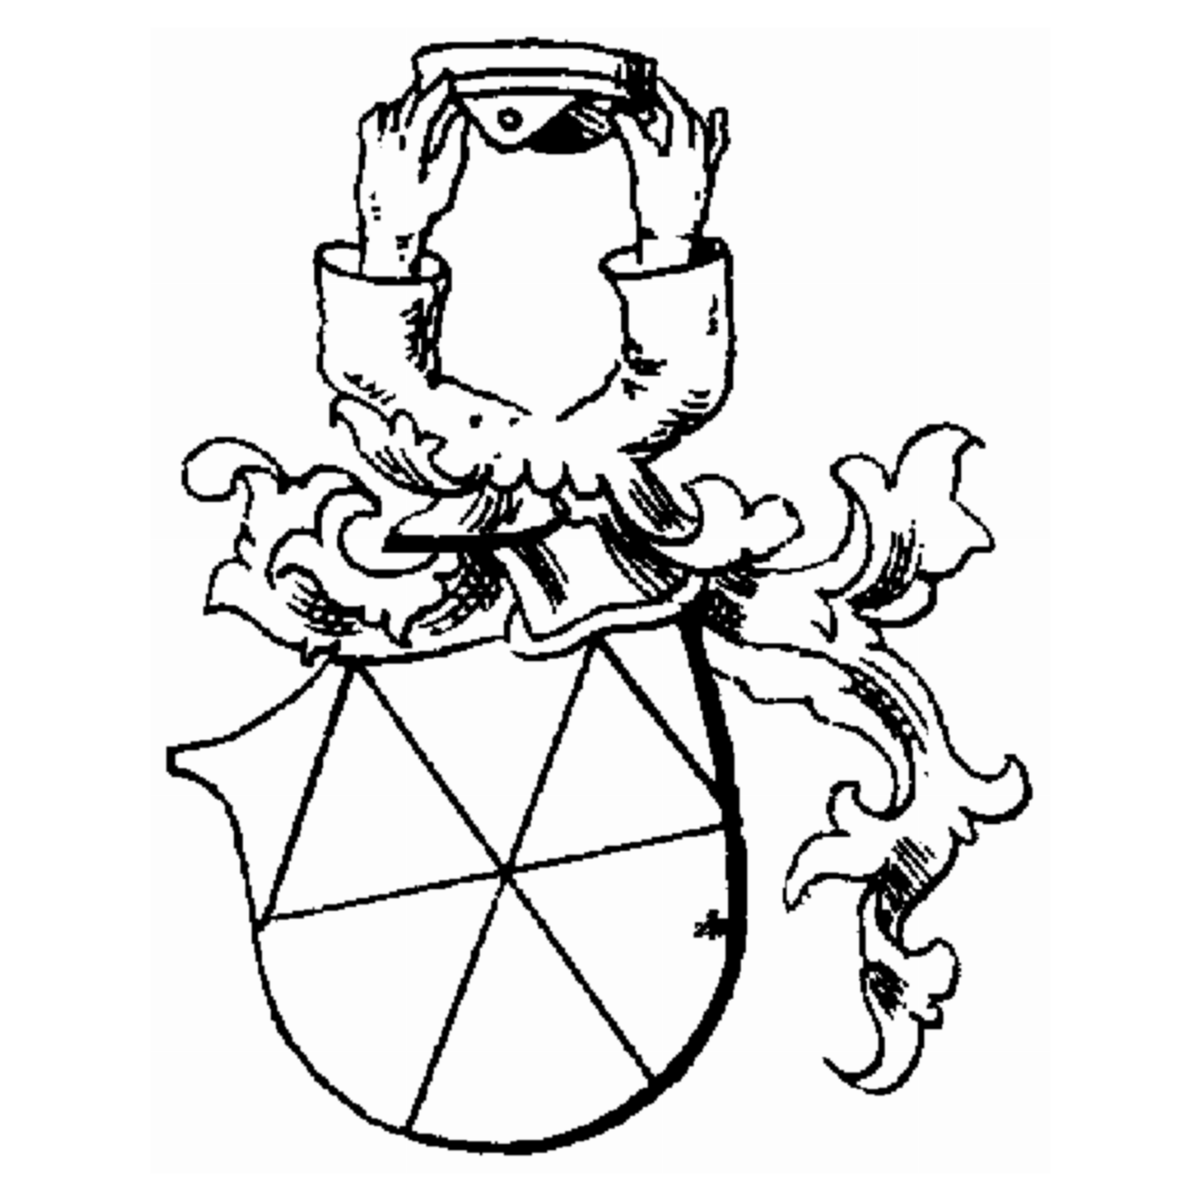 Escudo de la familia Barchusen